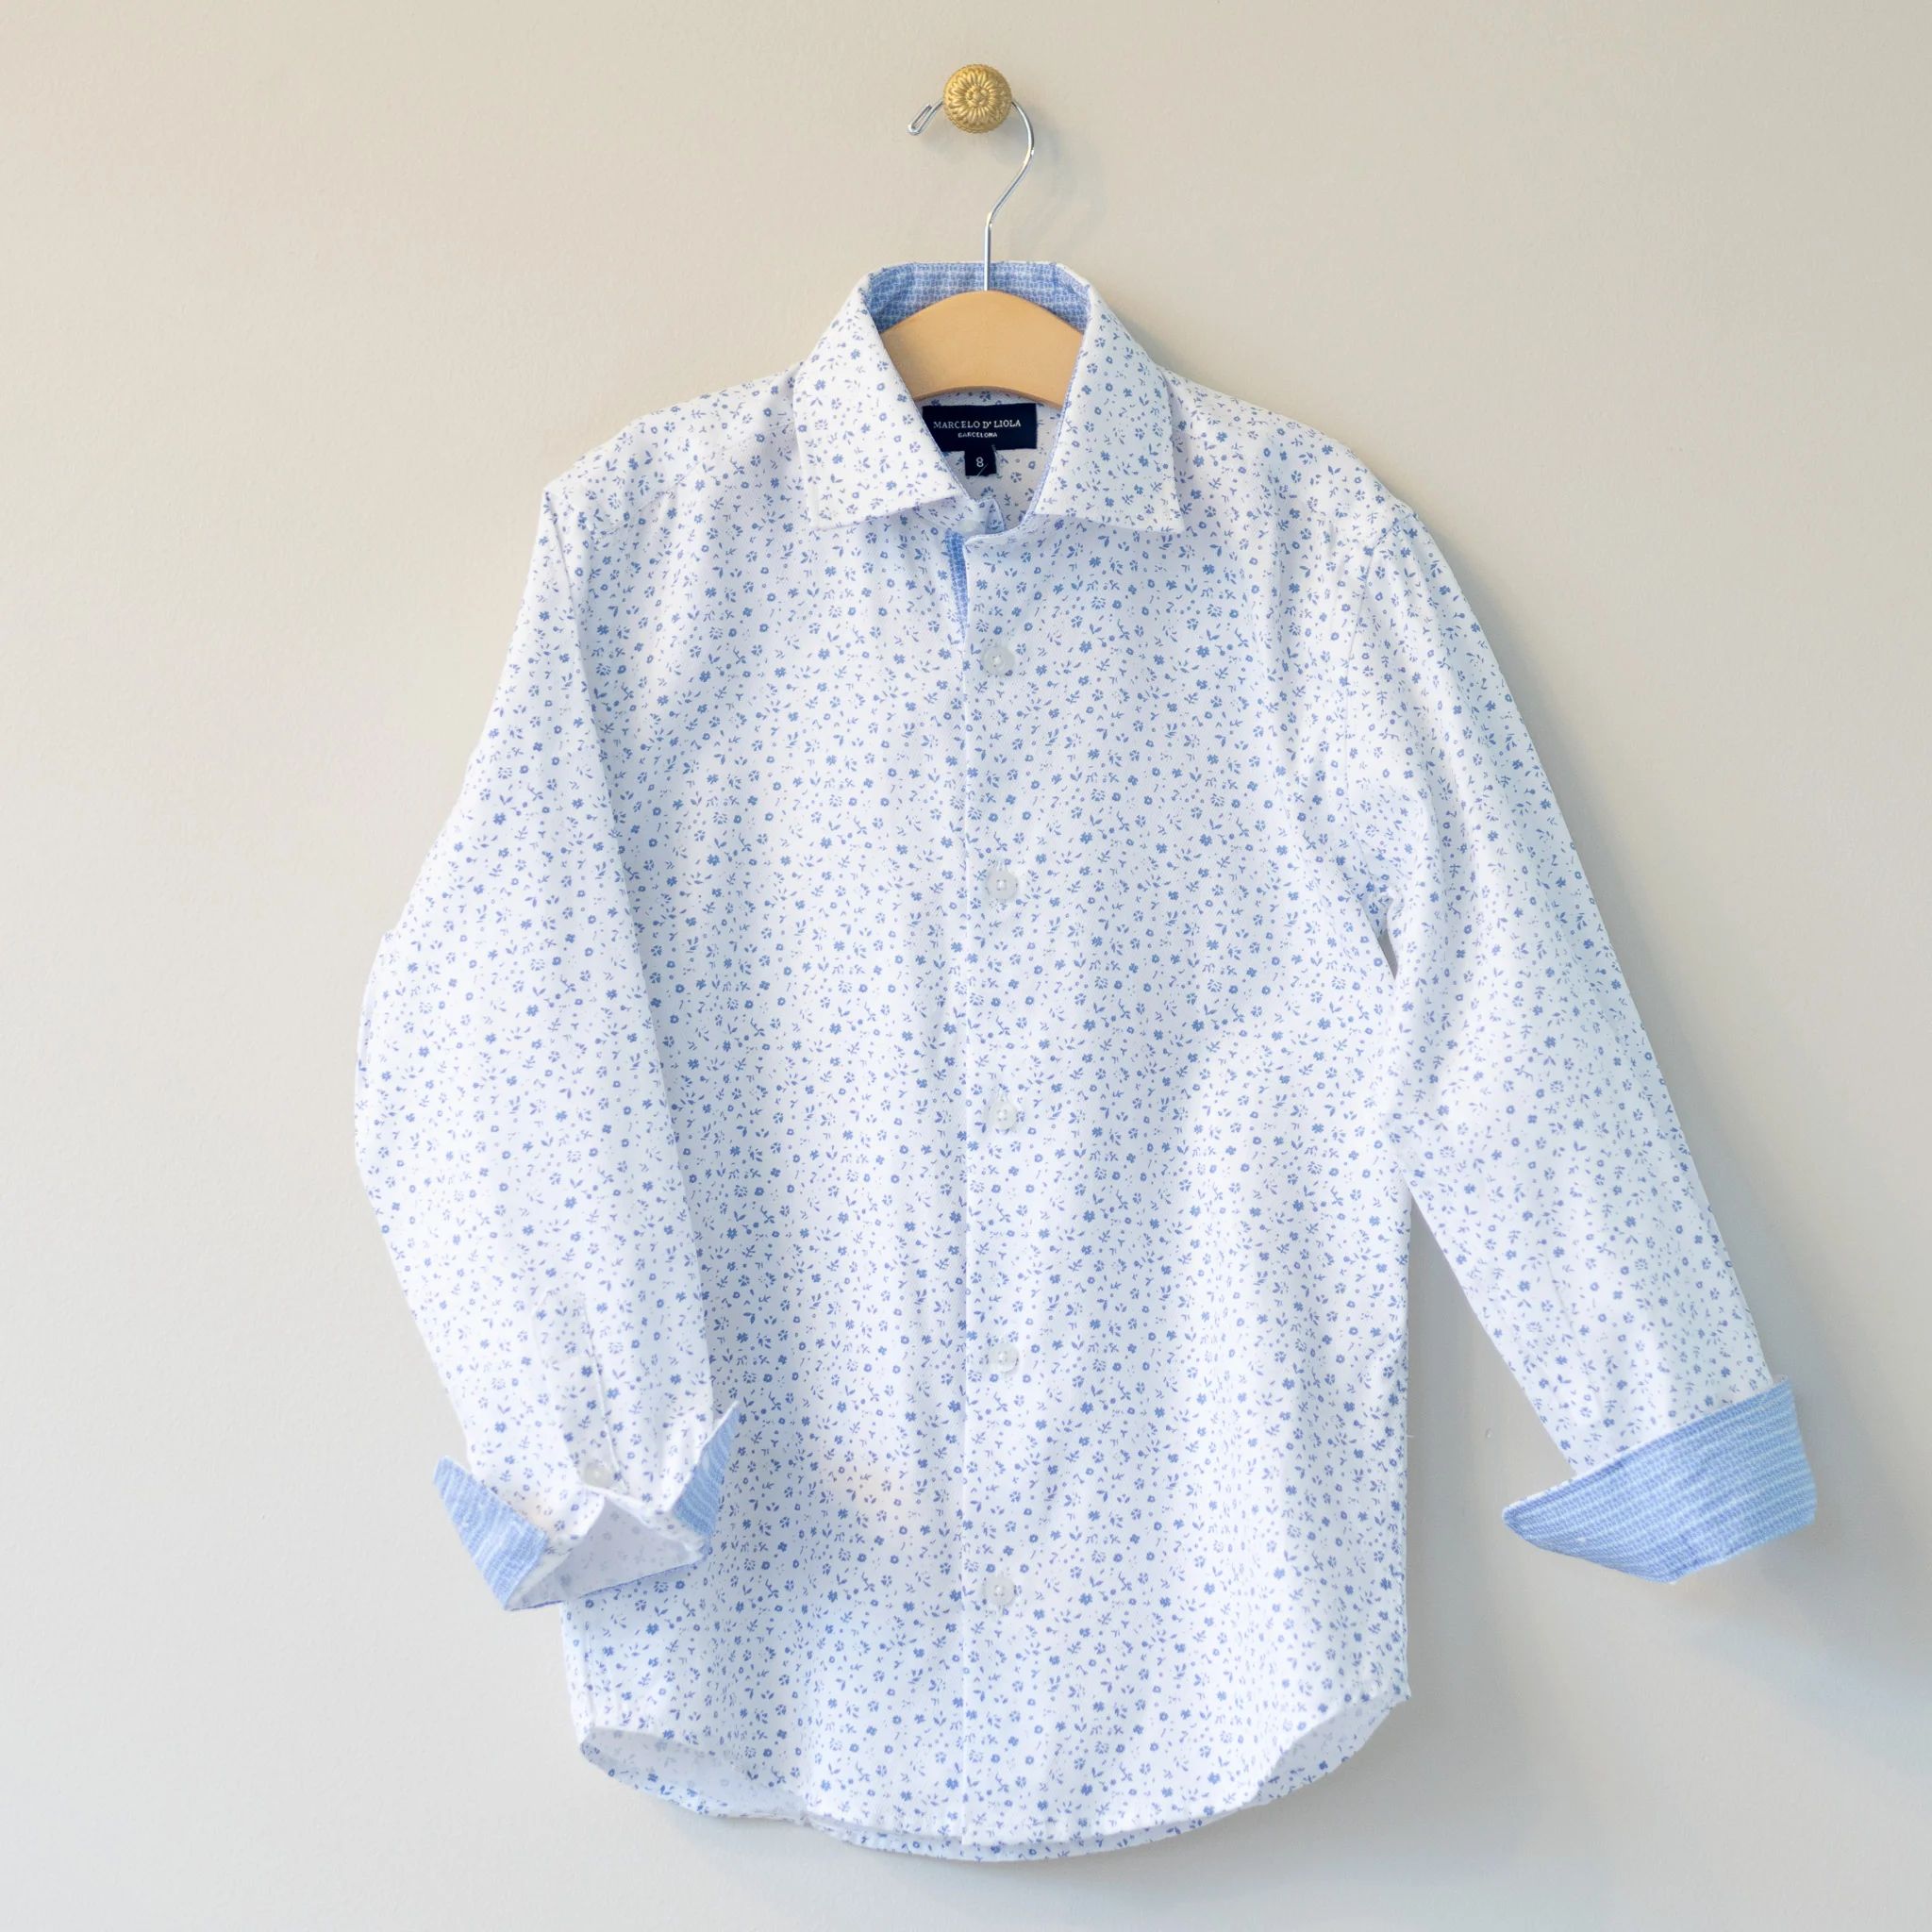 White/Blue Floral L/S Dress Shirt | Four and Twenty Sailors